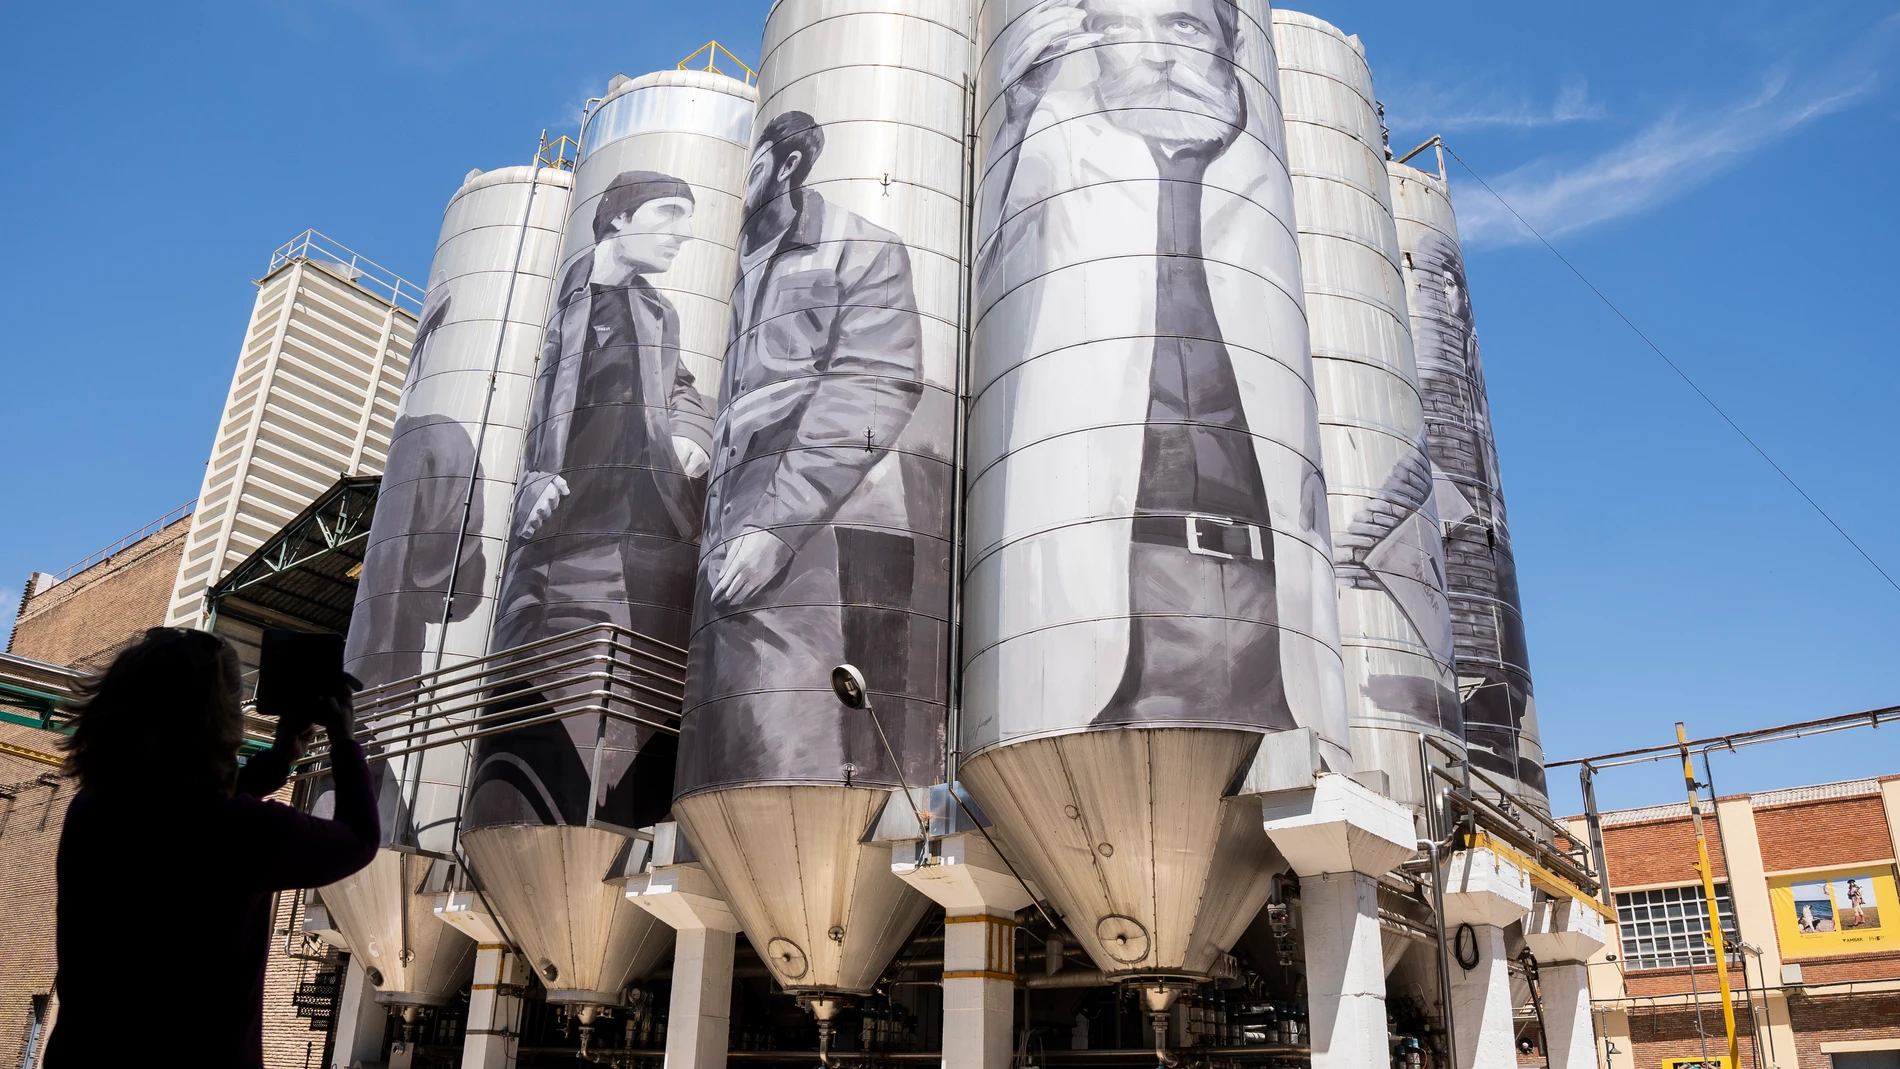 Exposición de Photoespaña en la fabrica de cervezas Ambar. Gigantes, Espacios, Memoria y Tiempo